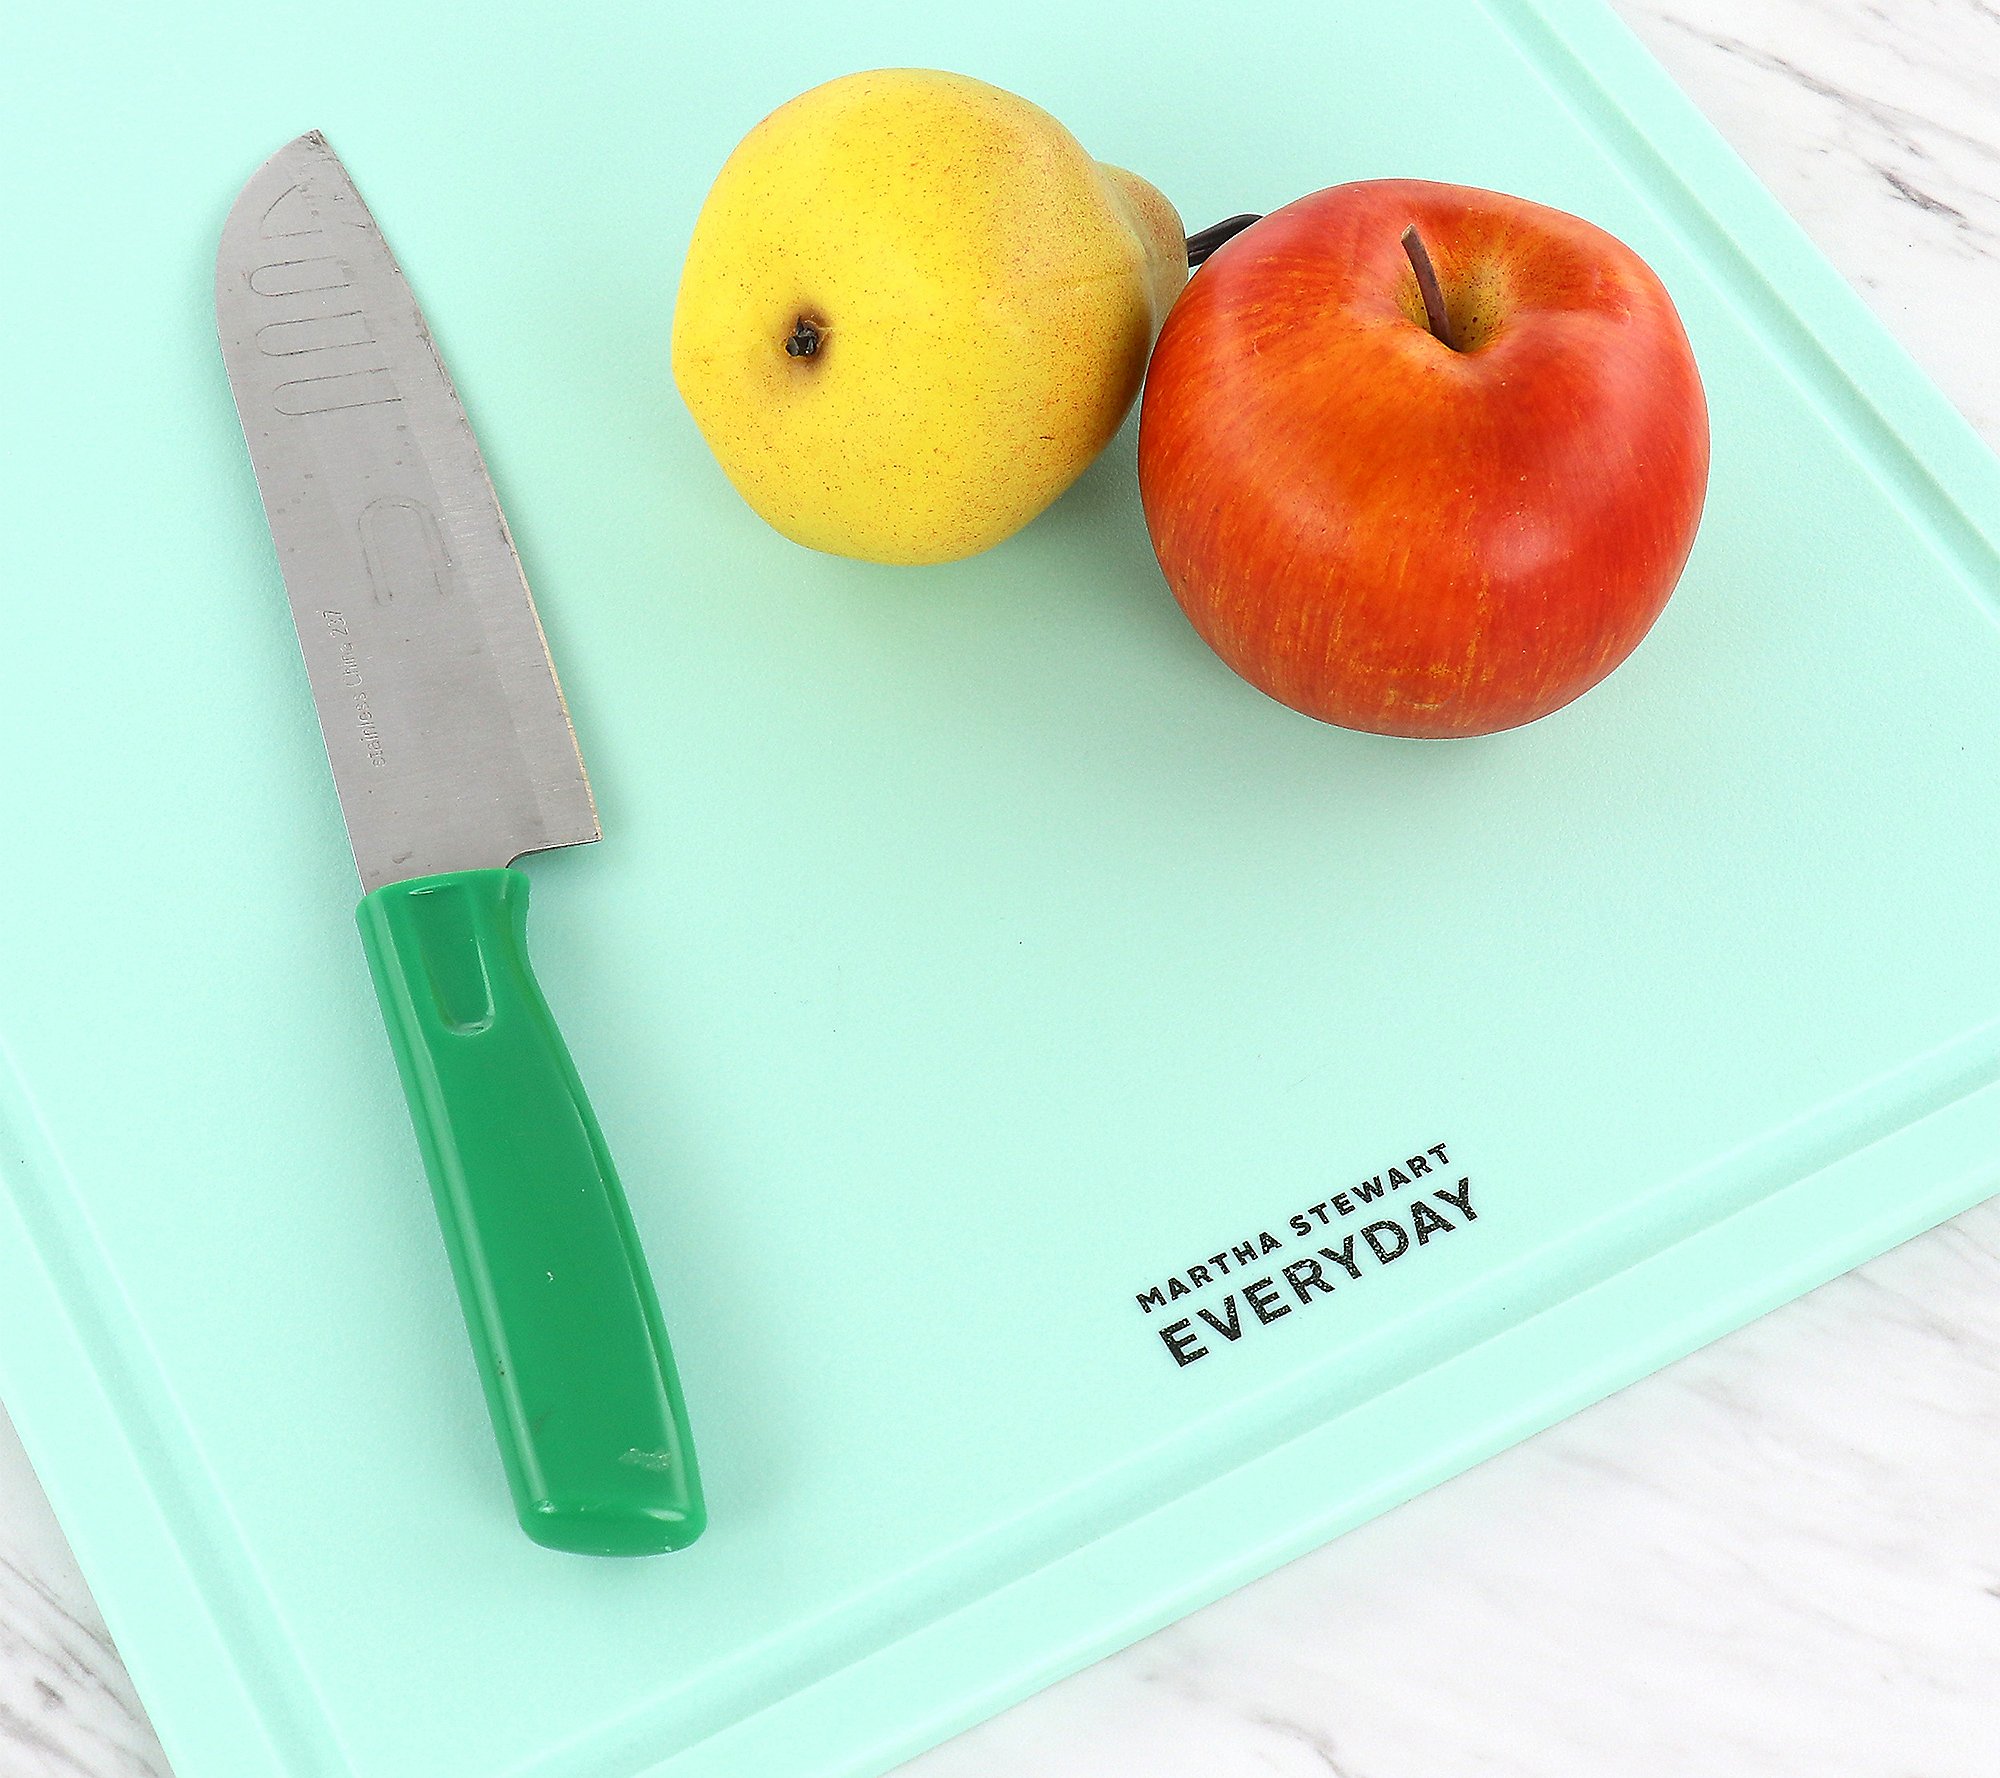 Martha Stewart Everyday 18x13 Inch Plastic Cutting Board